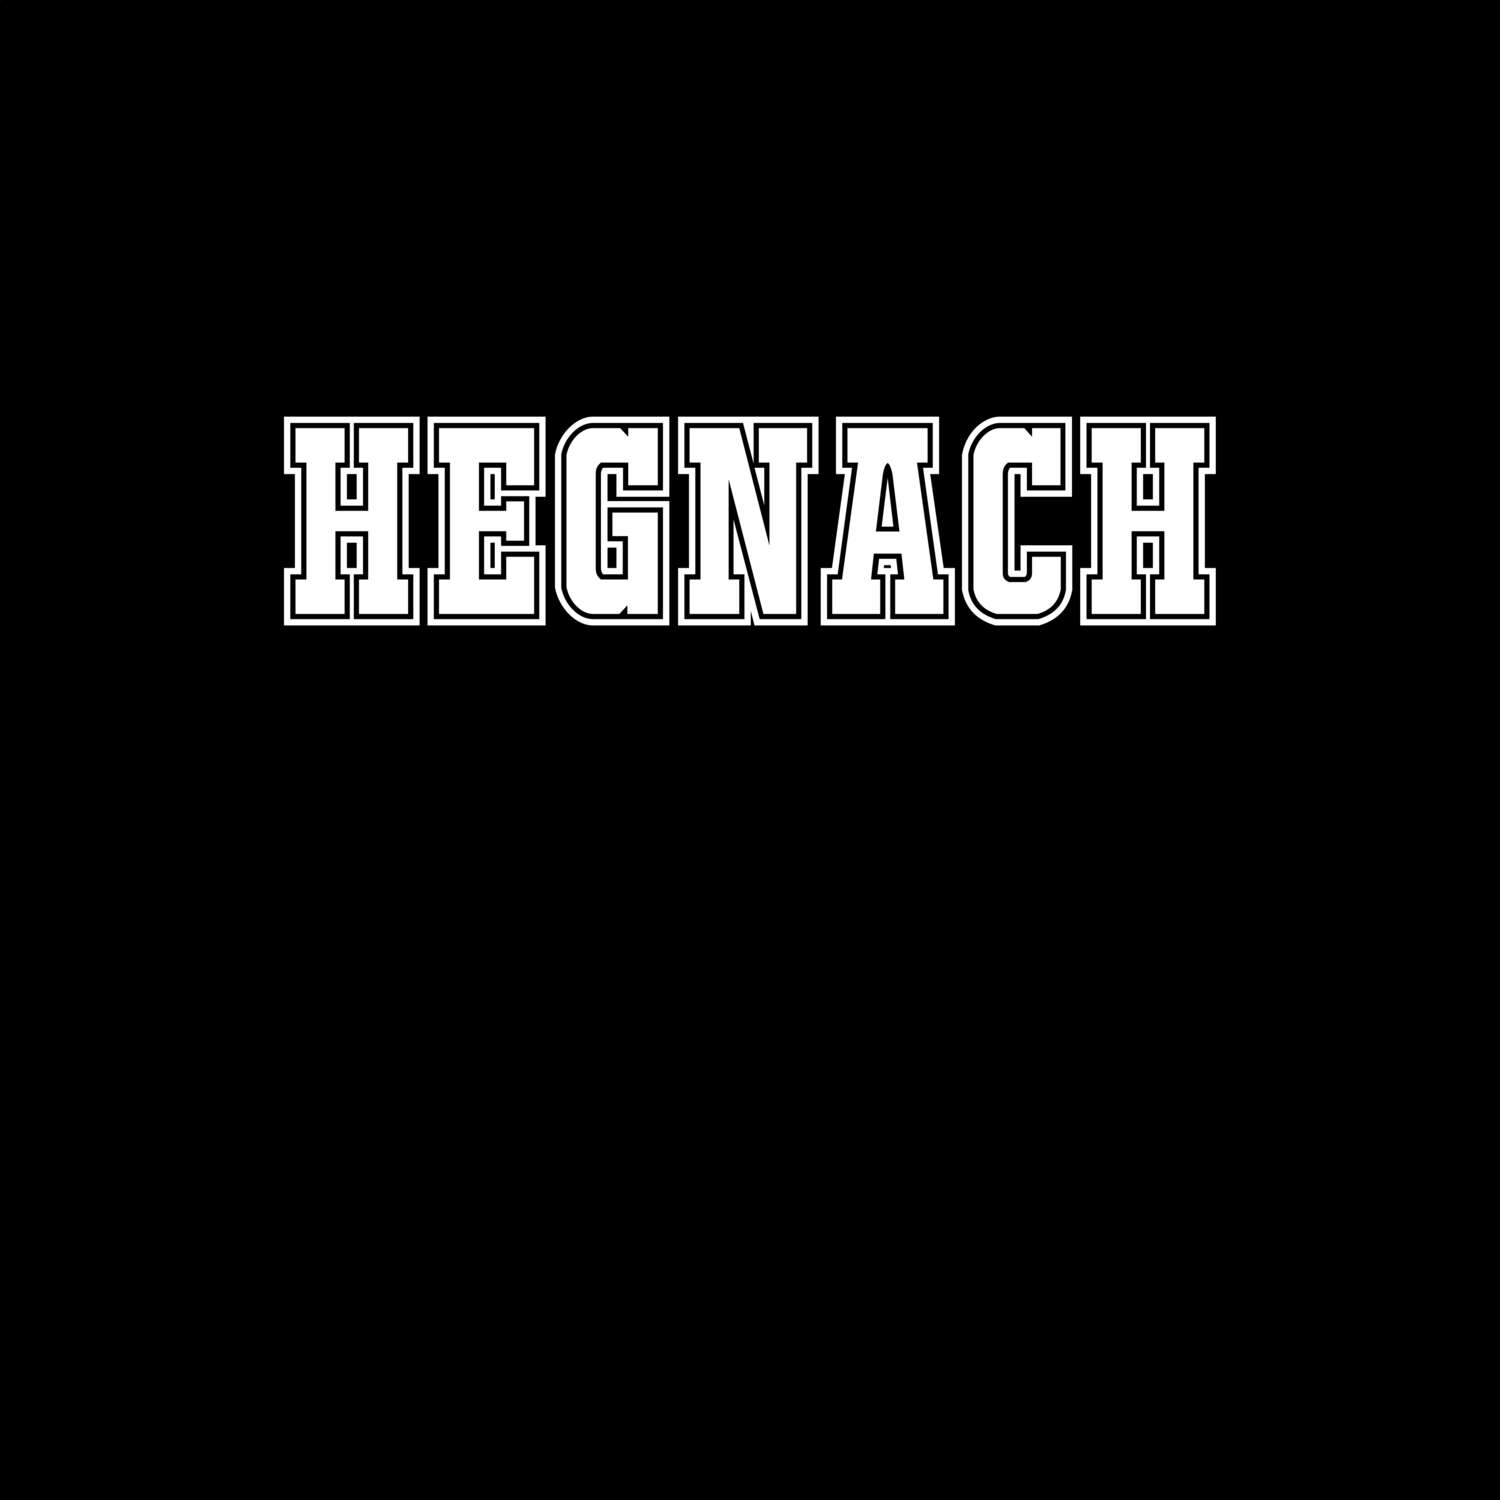 Hegnach T-Shirt »Classic«